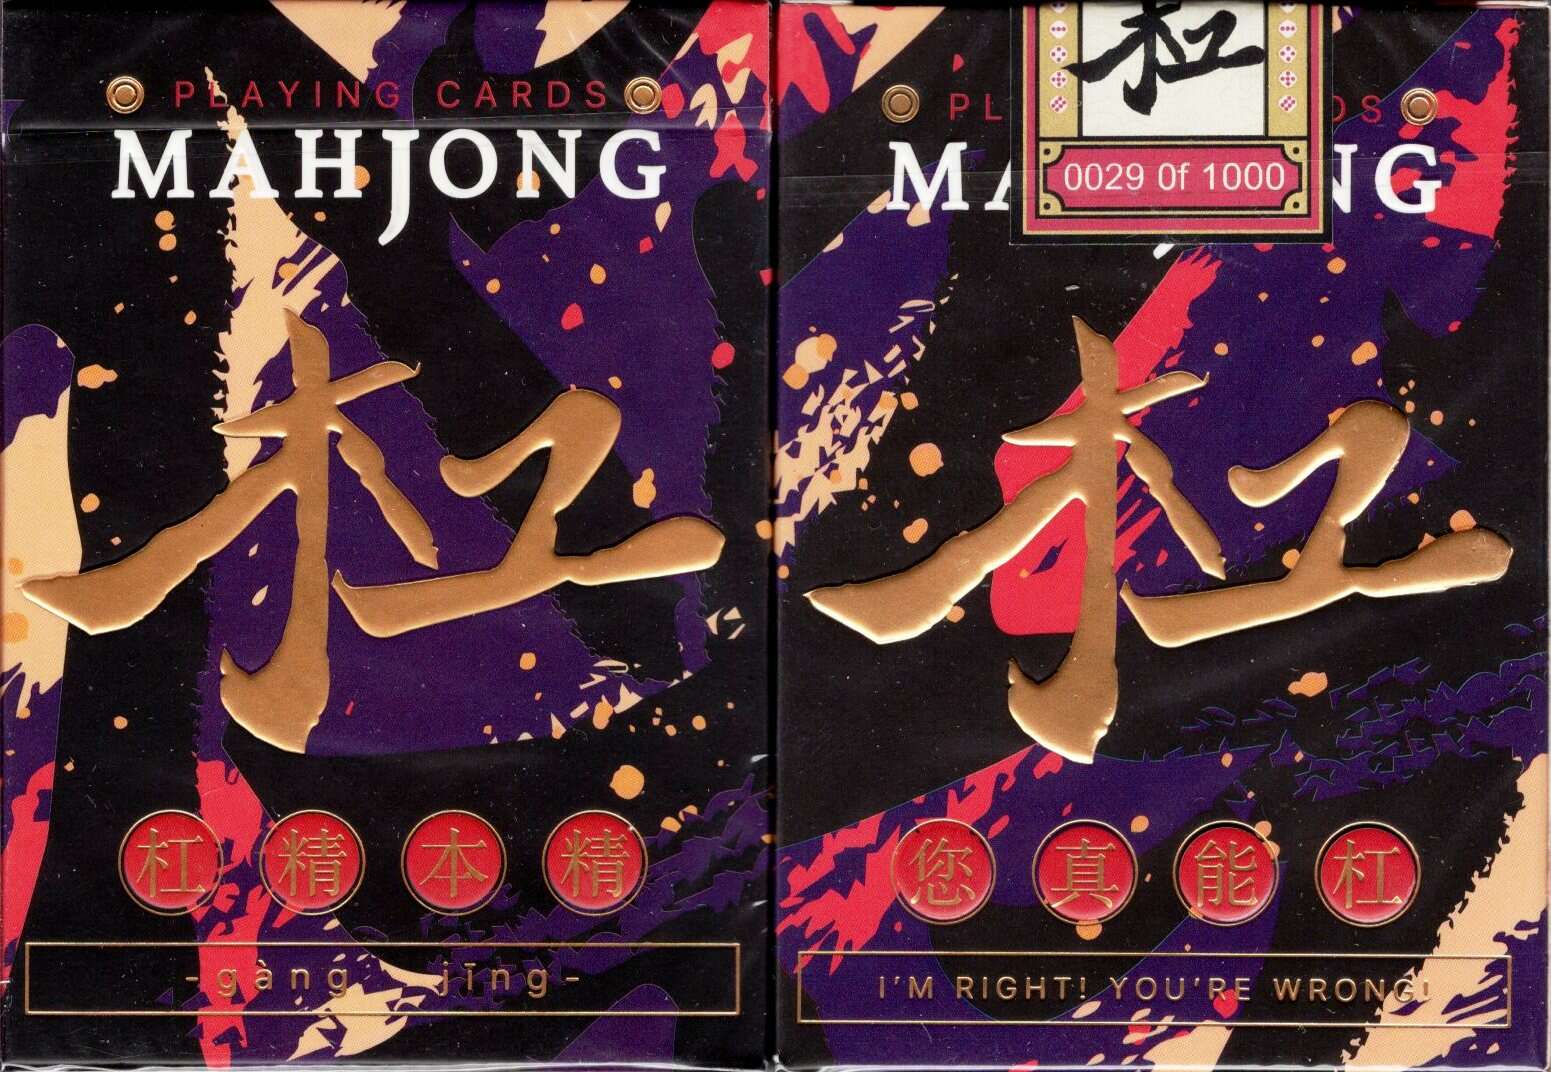 PlayingCardDecks.com-Mahjong Playing Cards: Gang Jing